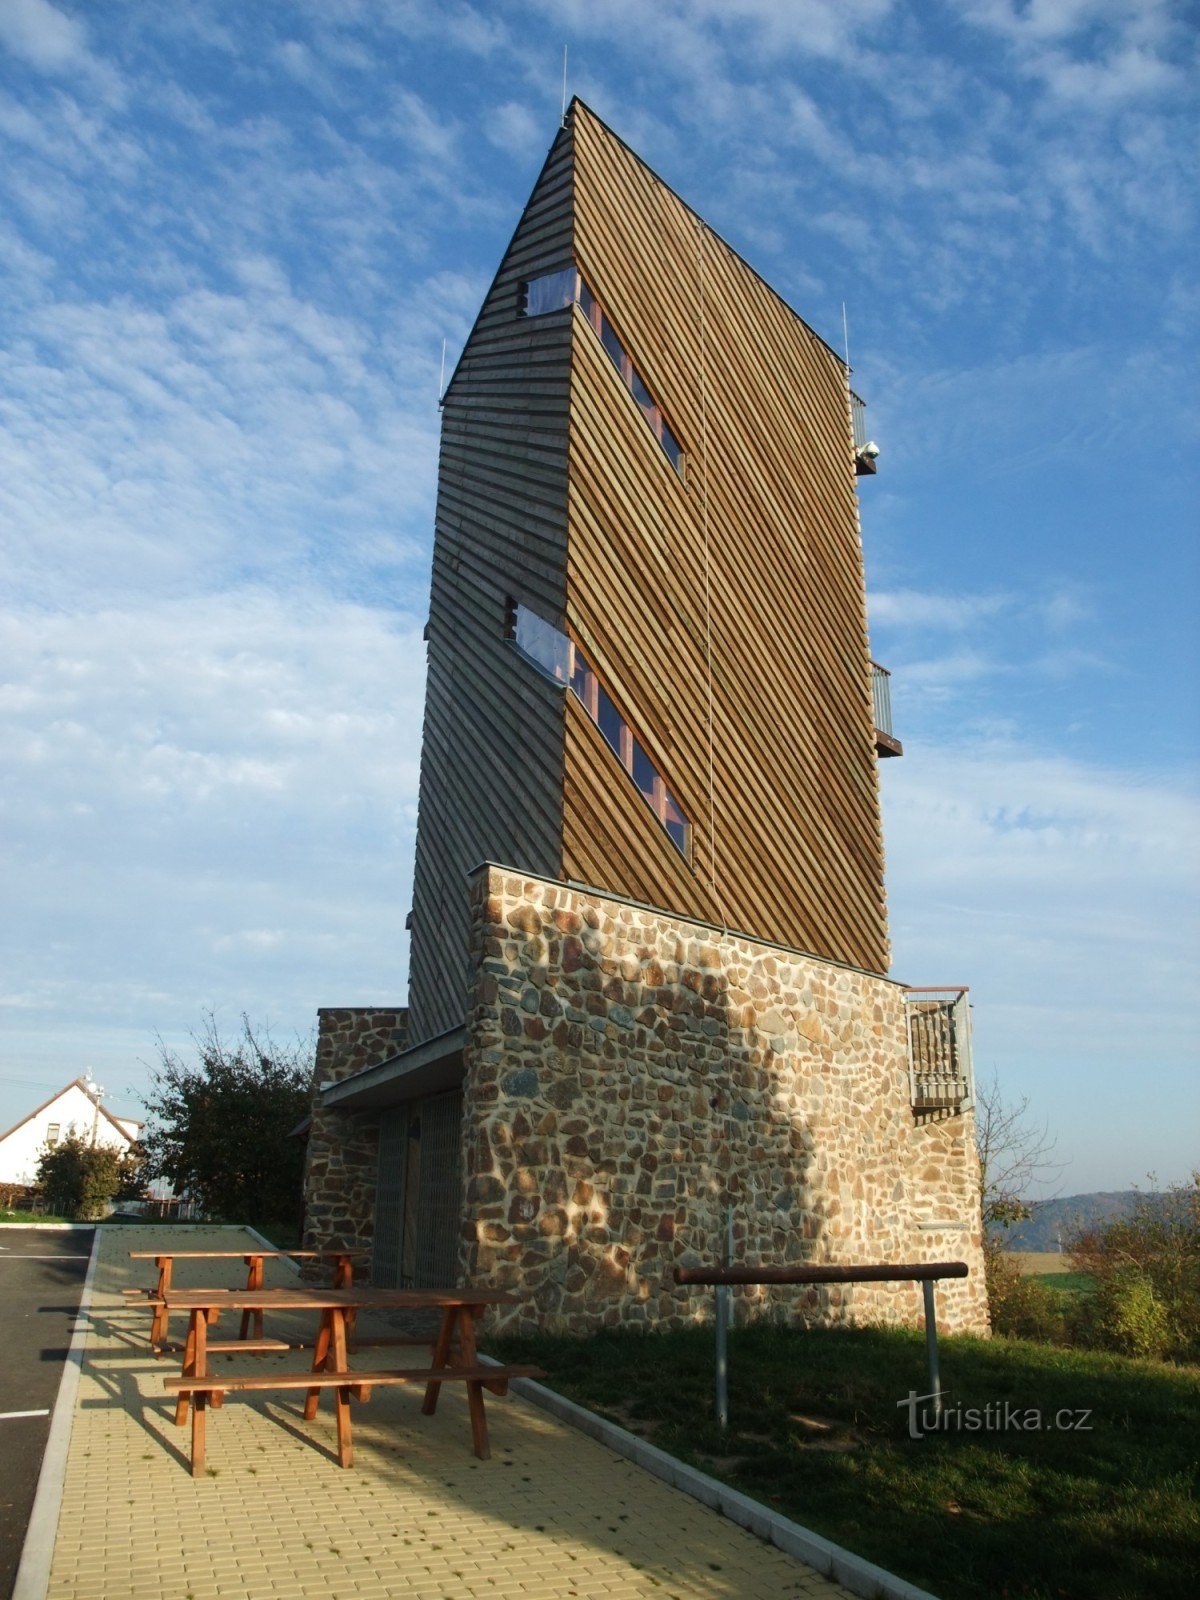 Velká Buková observation tower